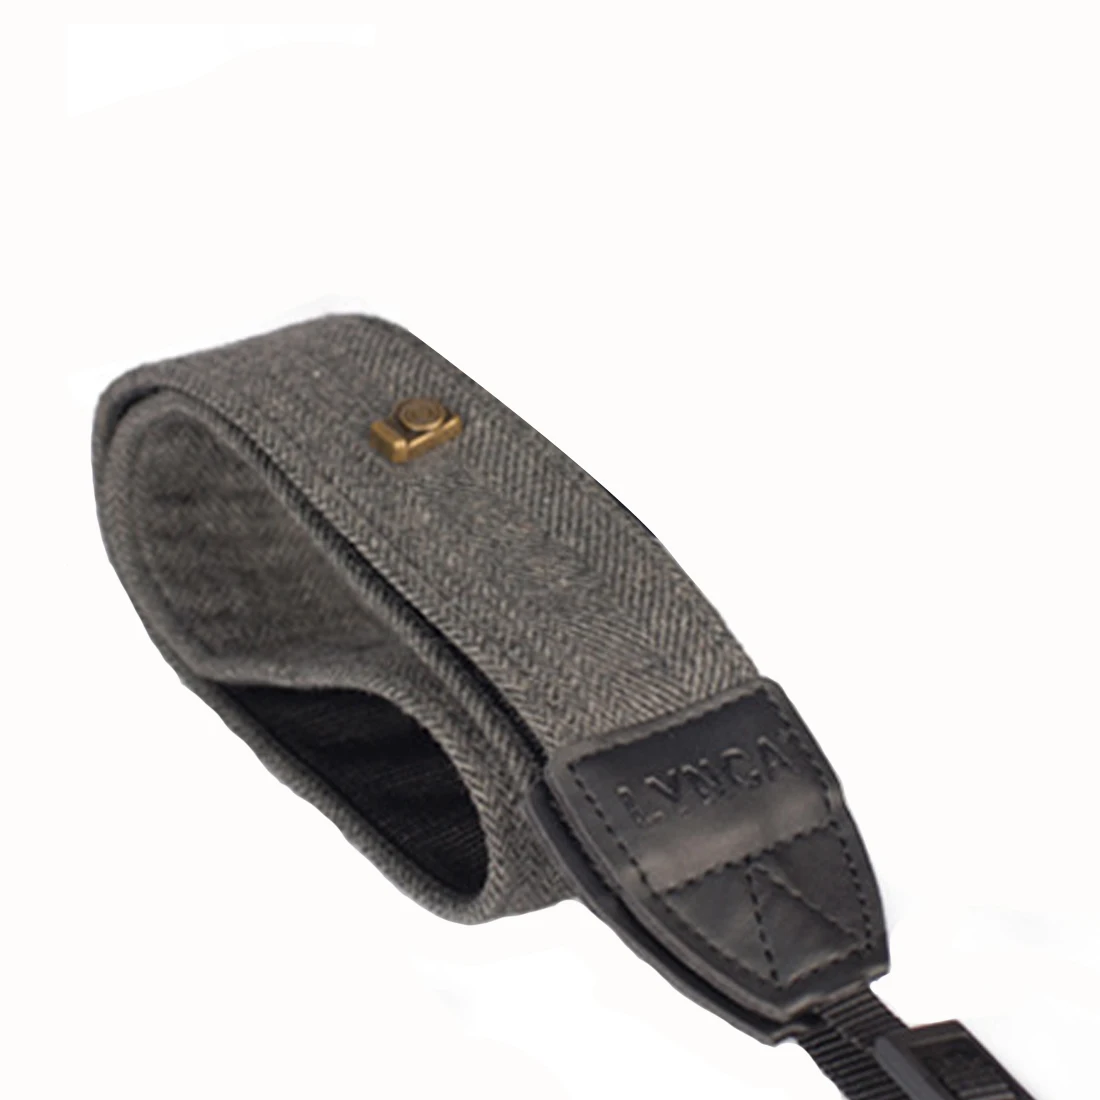 Centechia Универсальный винтажный Регулируемый хлопковый кожаный ремень с плечевым ремнем для камеры sony SLR s ремень аксессуары